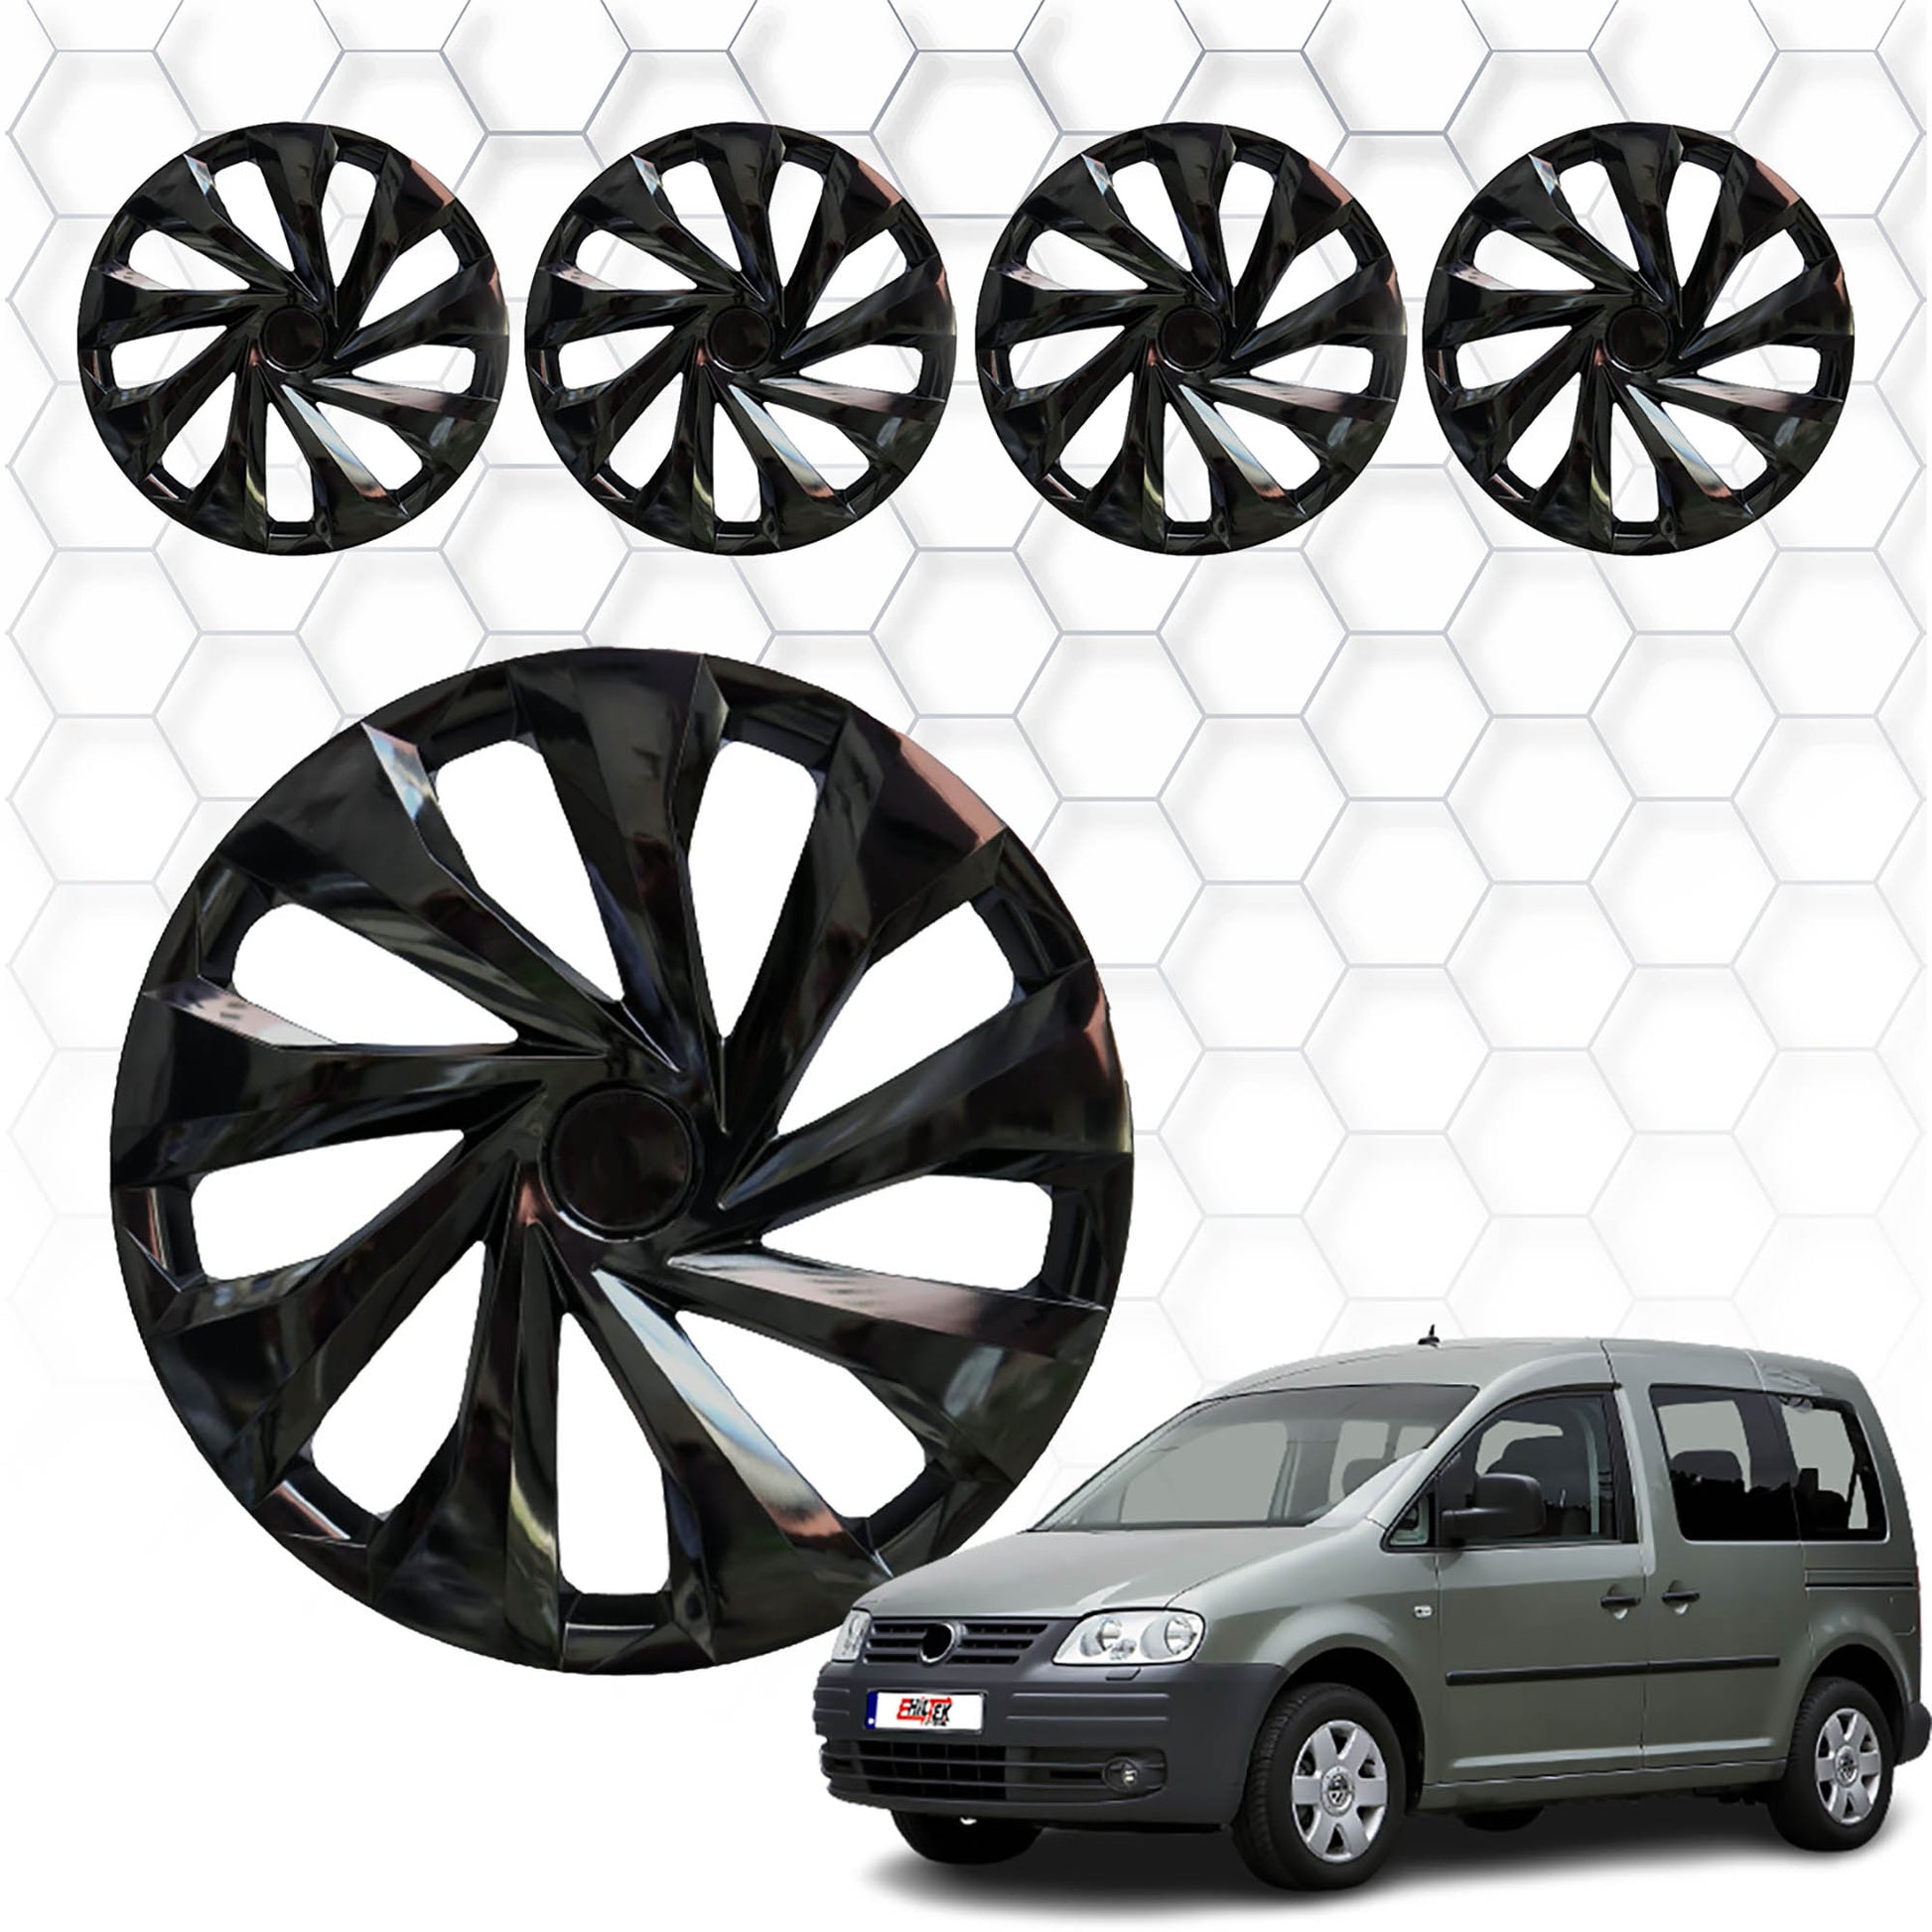 Volkswagen Caddy Jant Kapağı Aksesuarları Detaylı Resimleri, Kampanya bilgileri ve fiyatı - 1